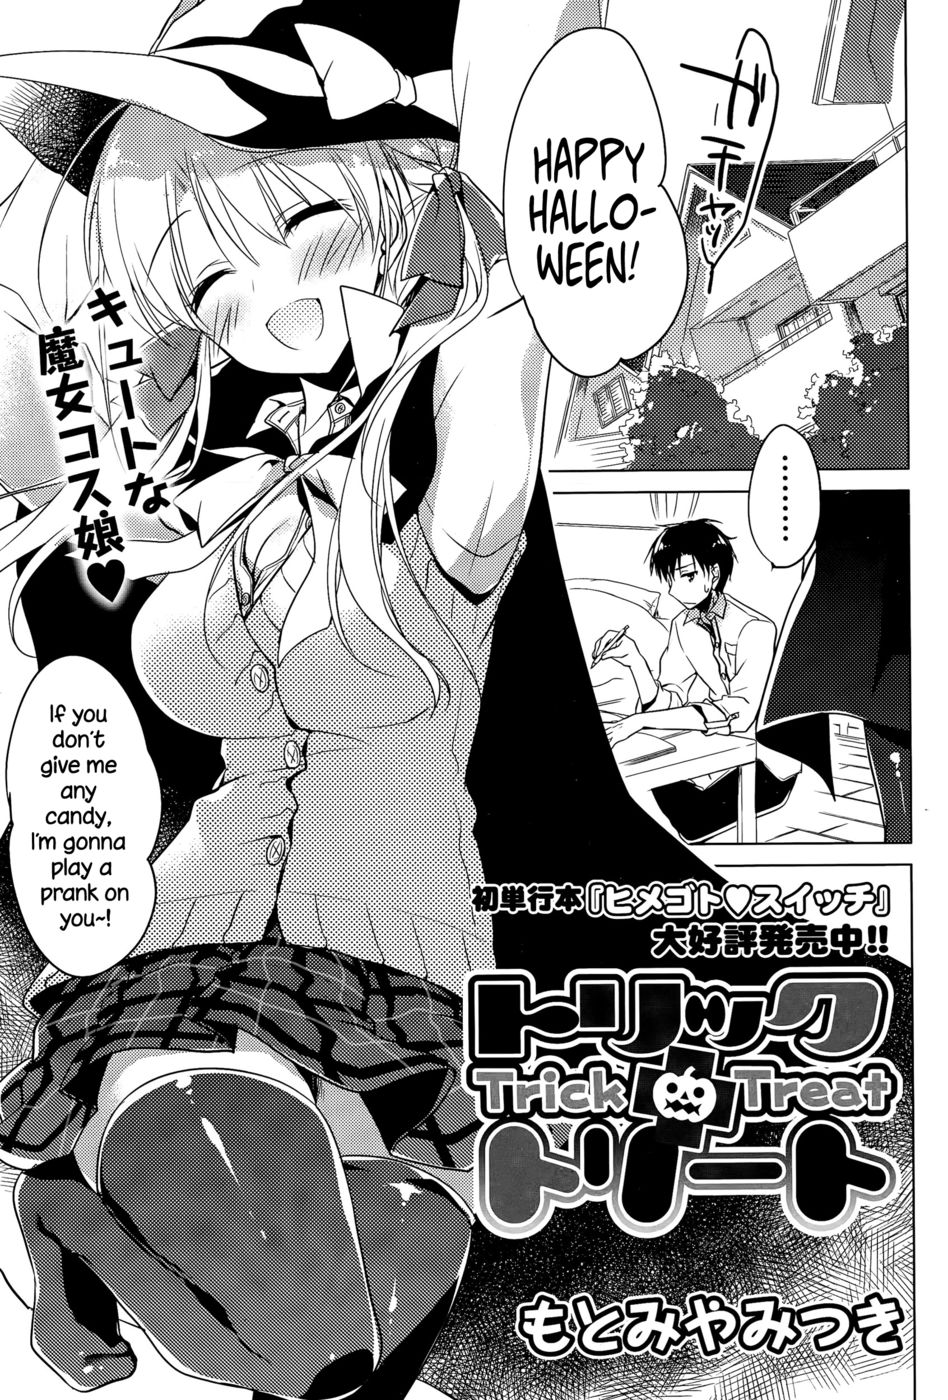 Hentai Manga Comic-Trick + Treat-Read-1